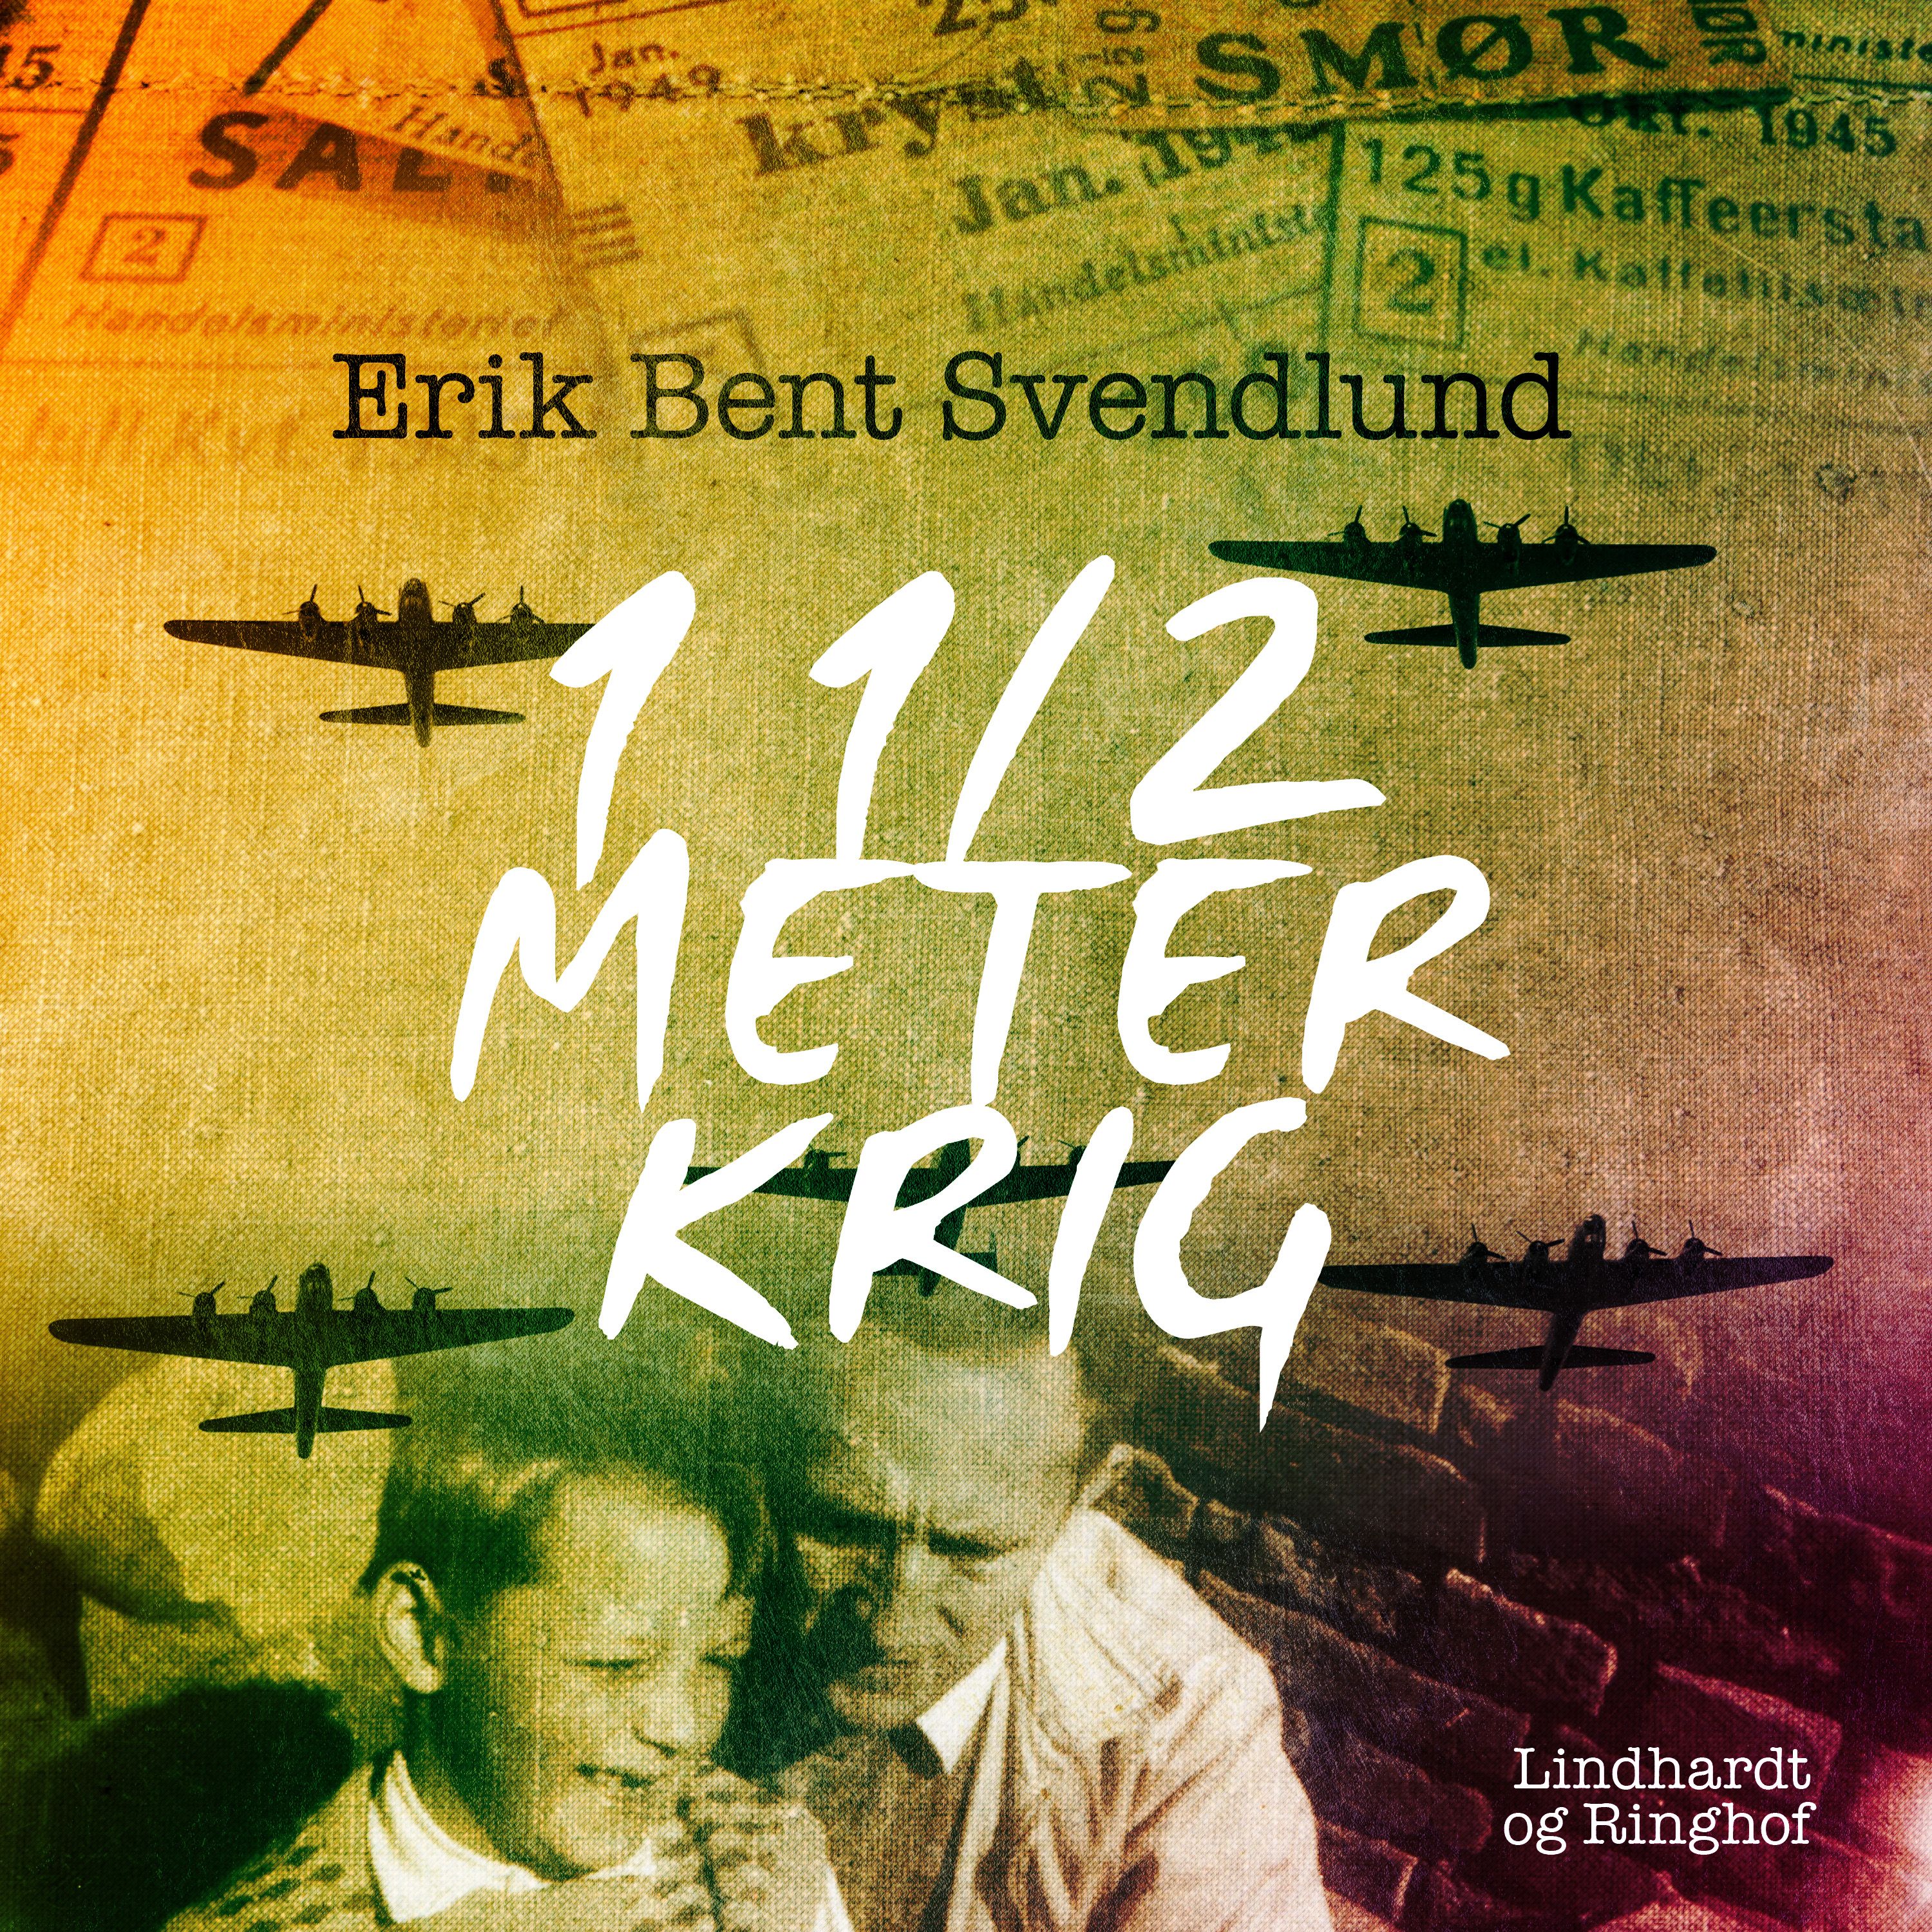 1 1/2 meter krig, audiobook by Erik Bent Svendlund